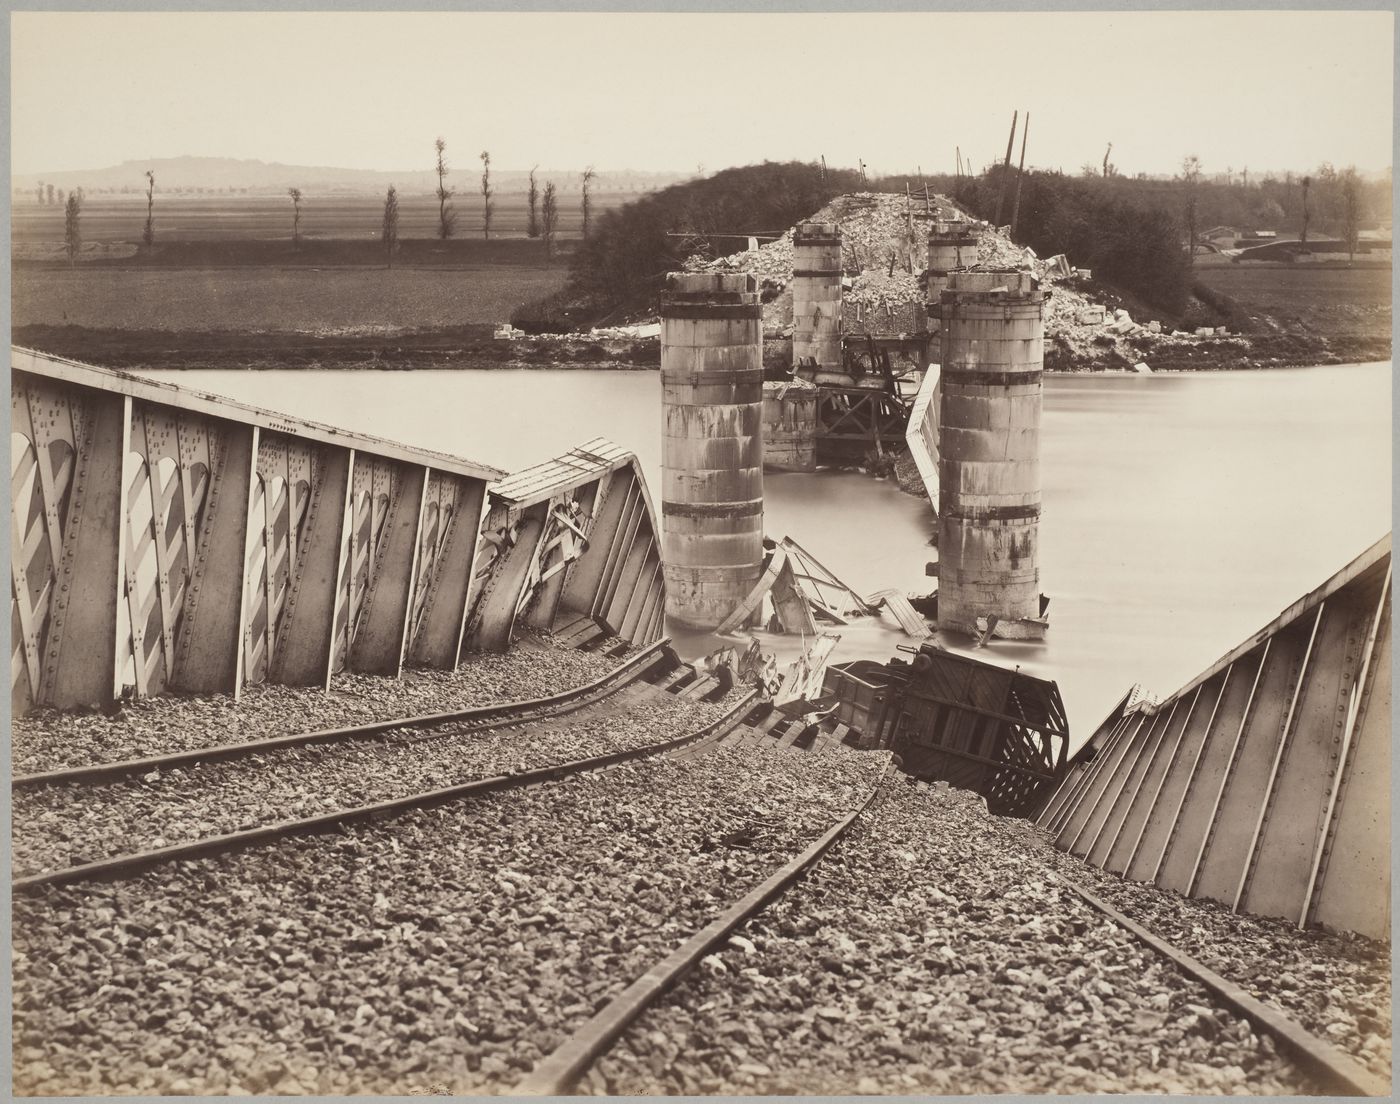 View of the damage to the Argenteuil Bridge after the Paris Commune, Paris, France